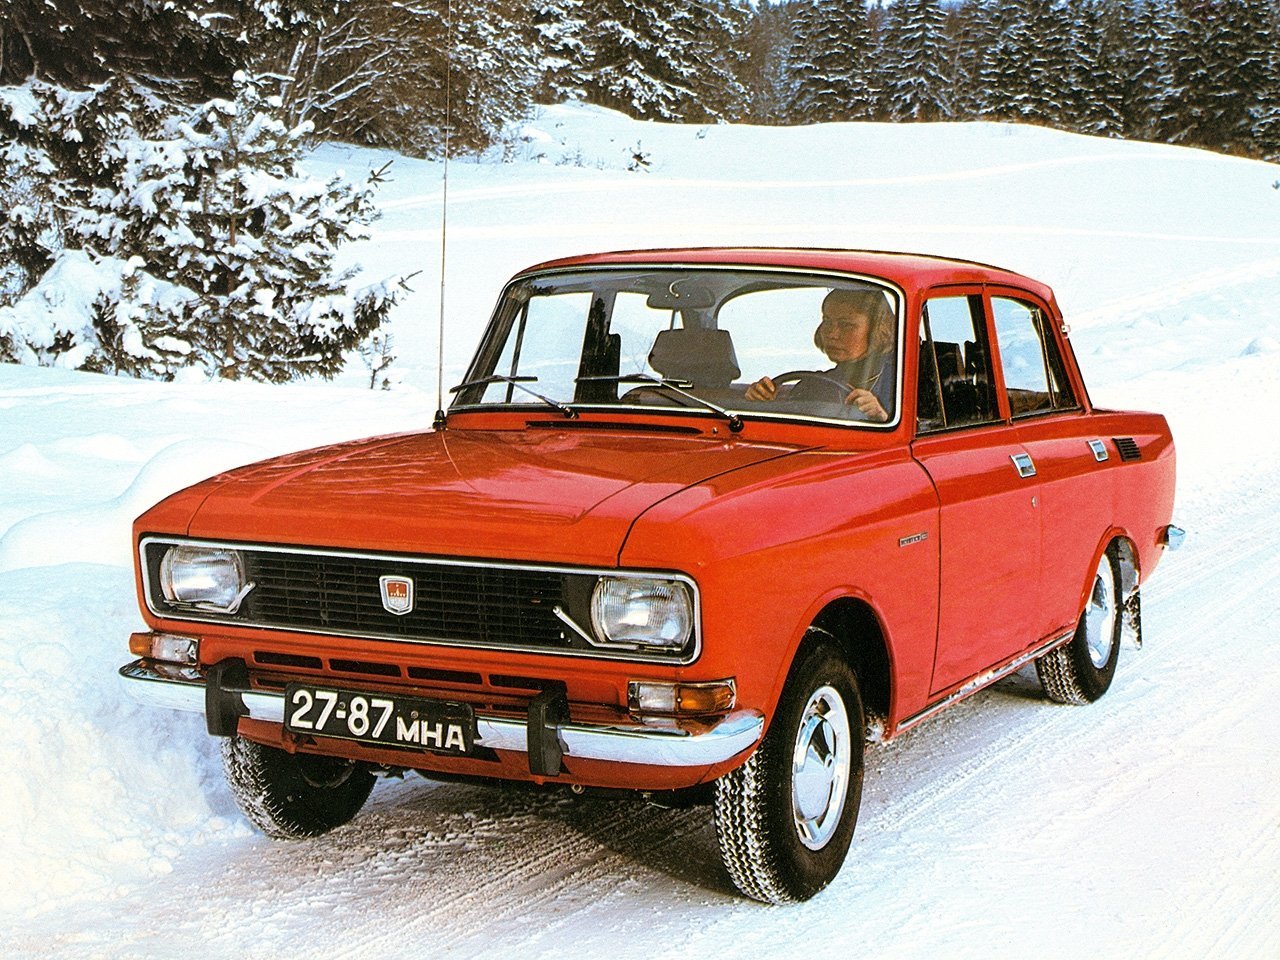 седан Москвич 2138 1976 - 1981г выпуска модификация 1.4 MT (50 л.с.)